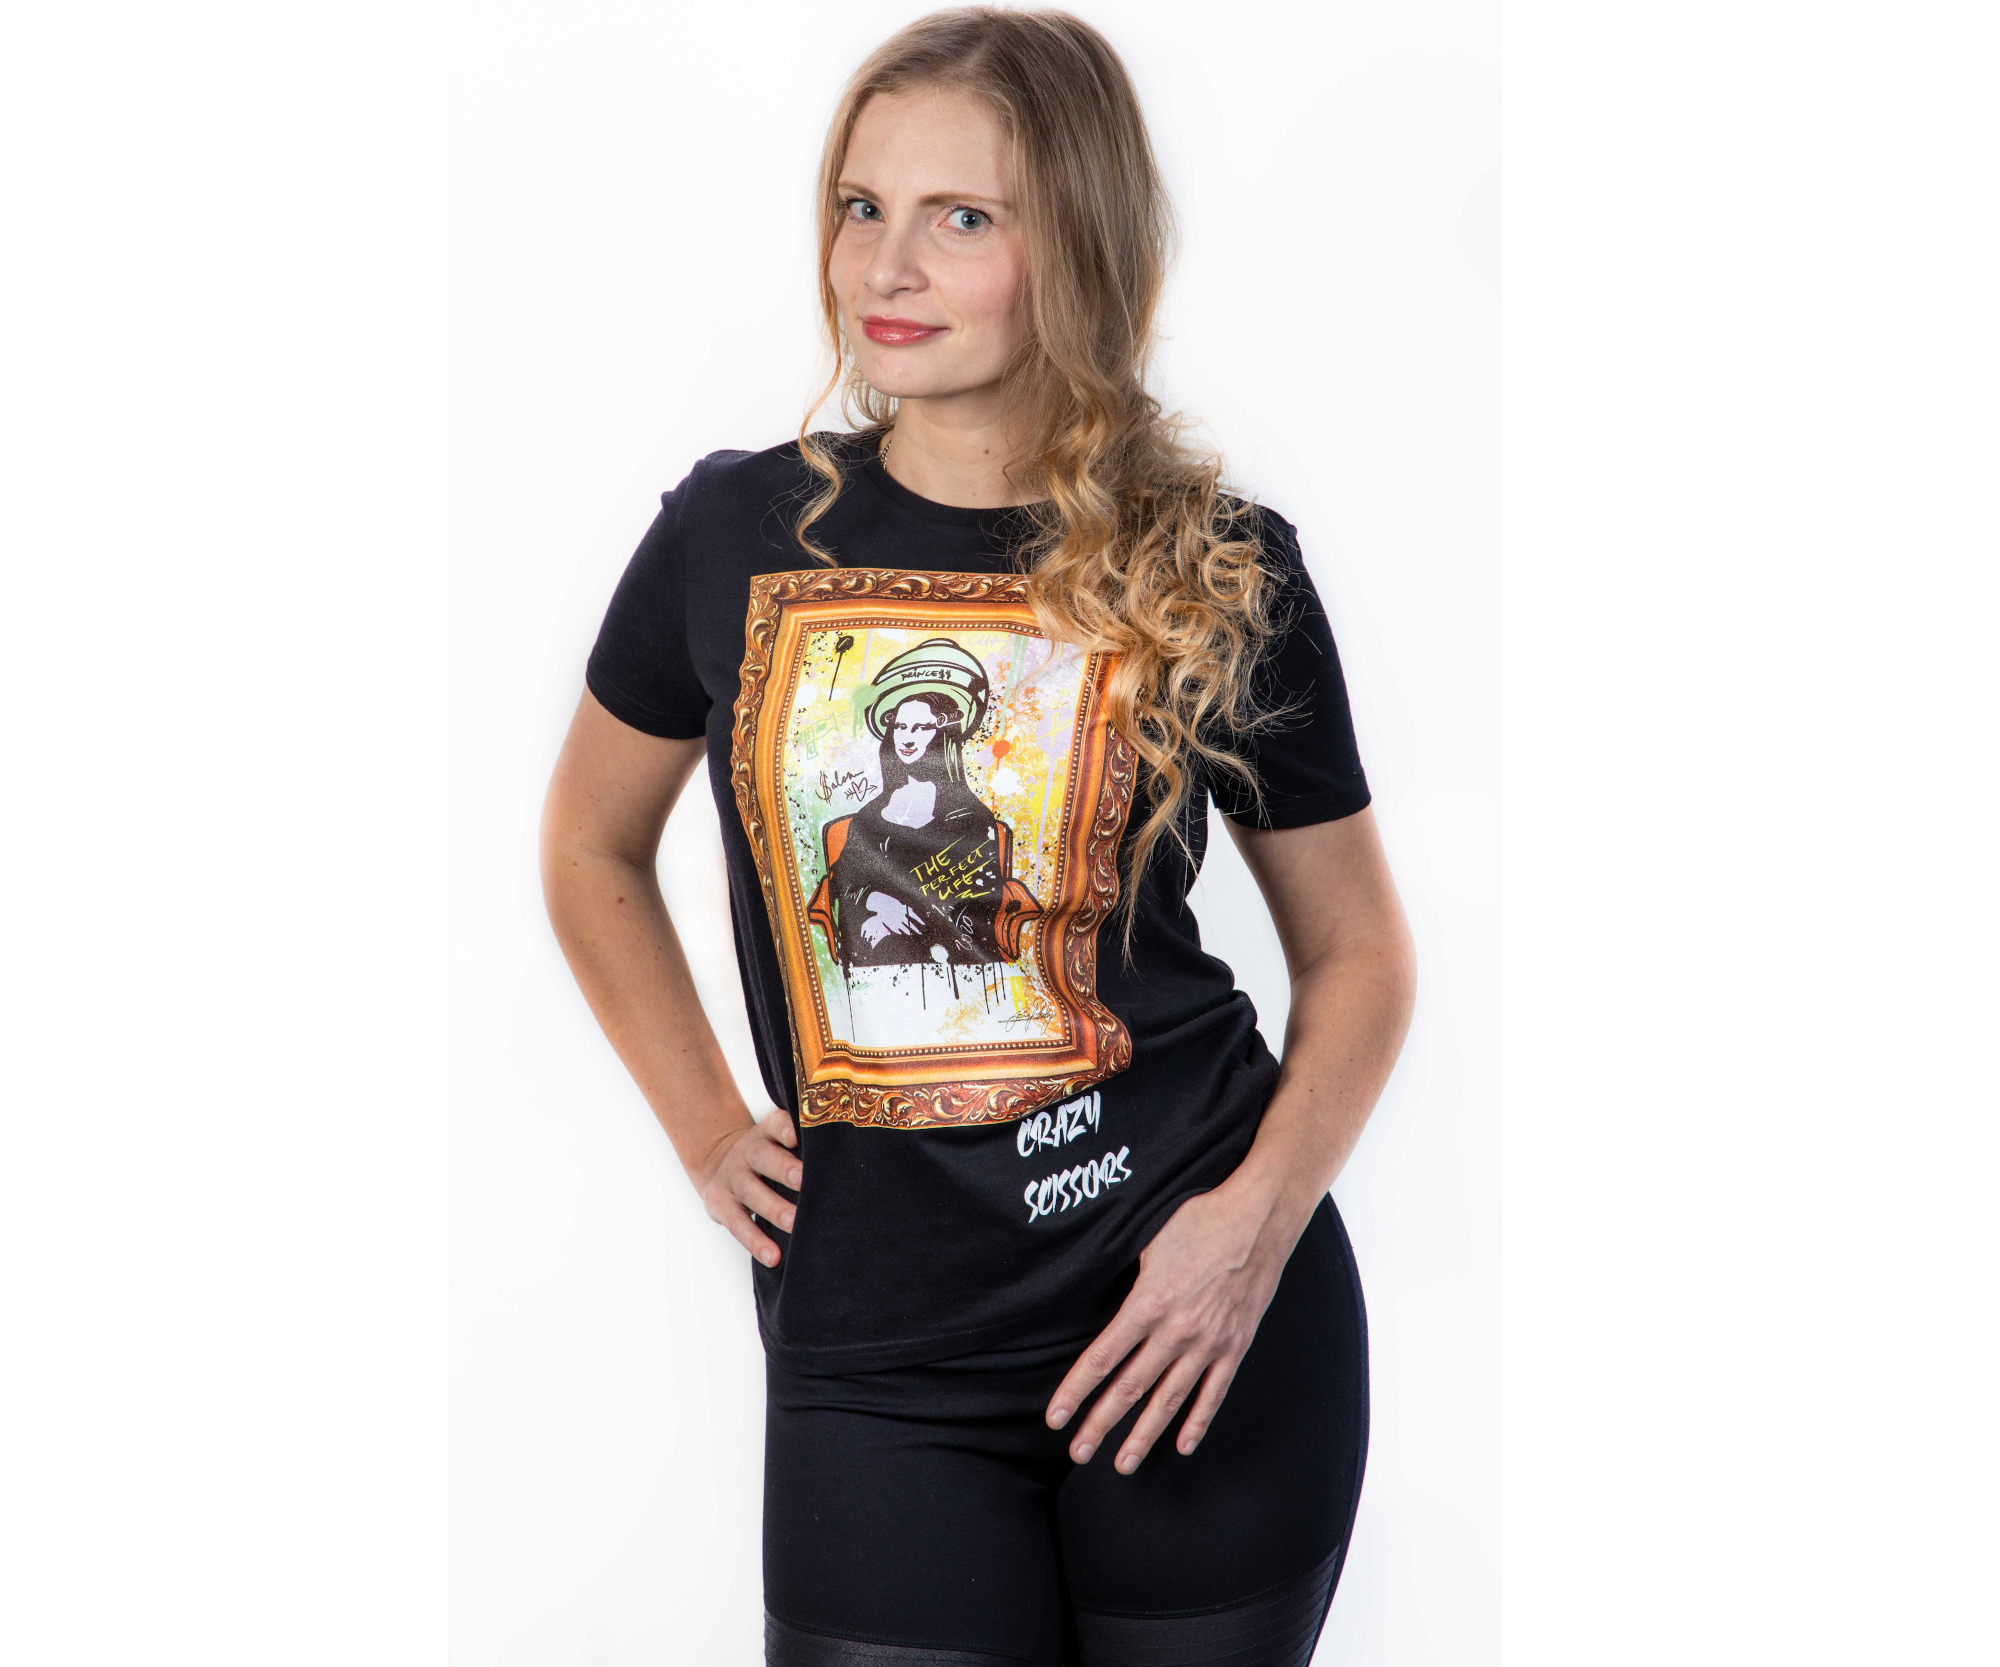 Tričko s krátkým rukávem Crazy Scissors Mona Lisa - černé, L + DÁREK ZDARMA